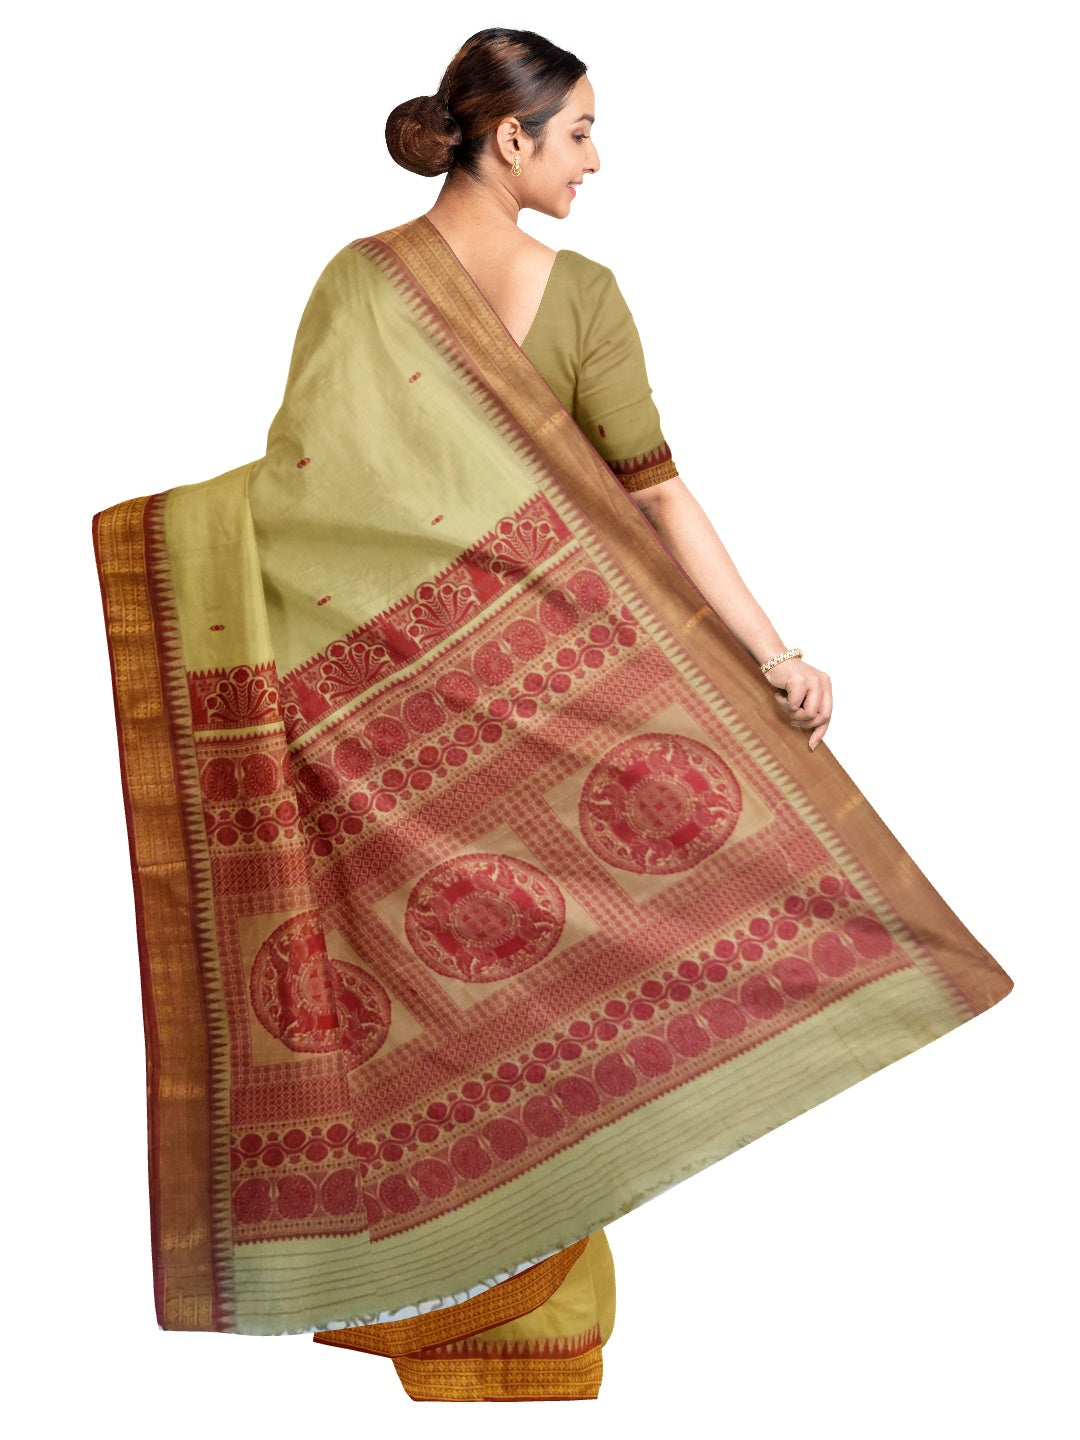 Bapta cotton Odisha Ikat saree with blouse piece